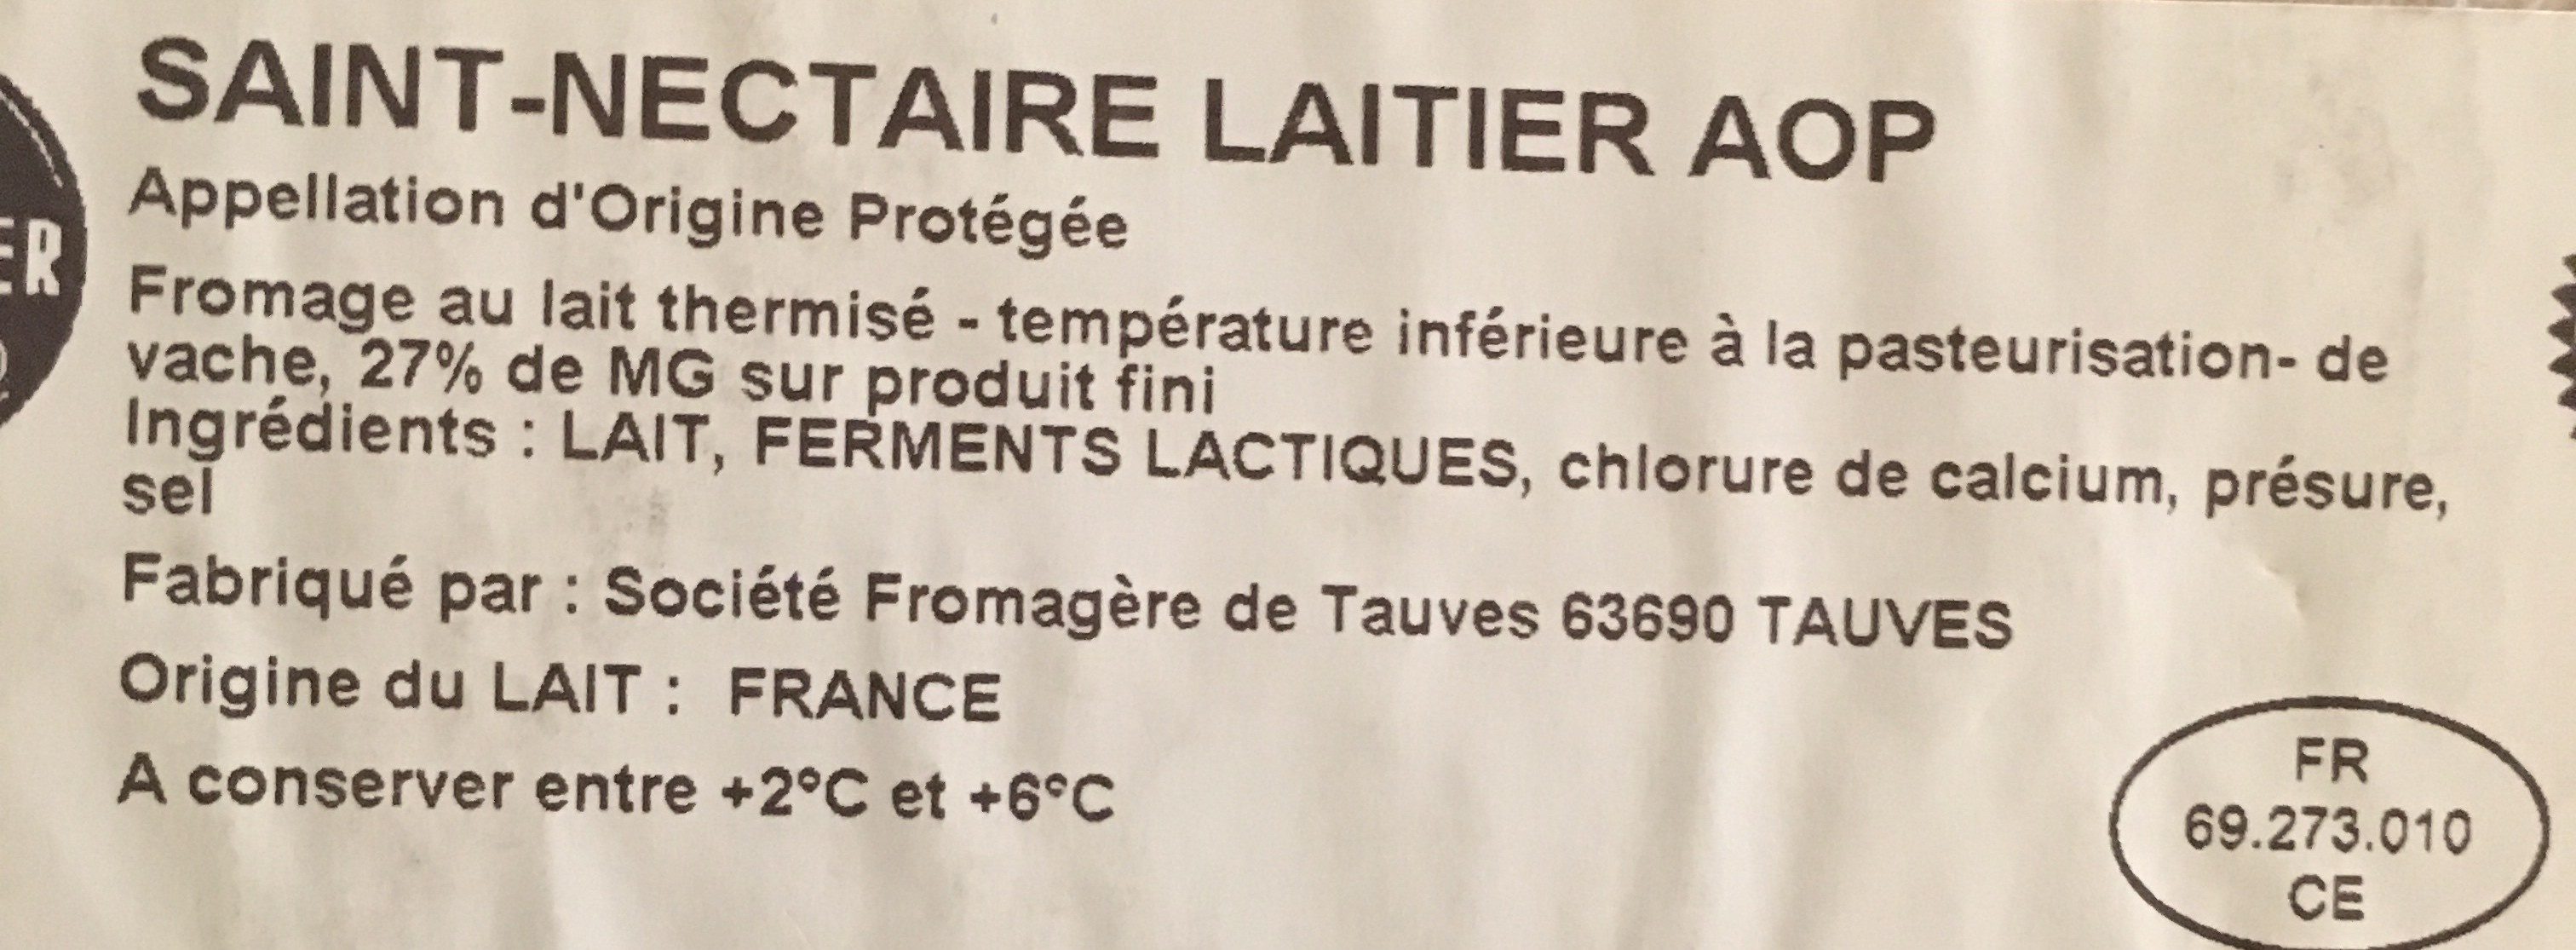 Saint Nectaire laitier AOP - Ingrédients